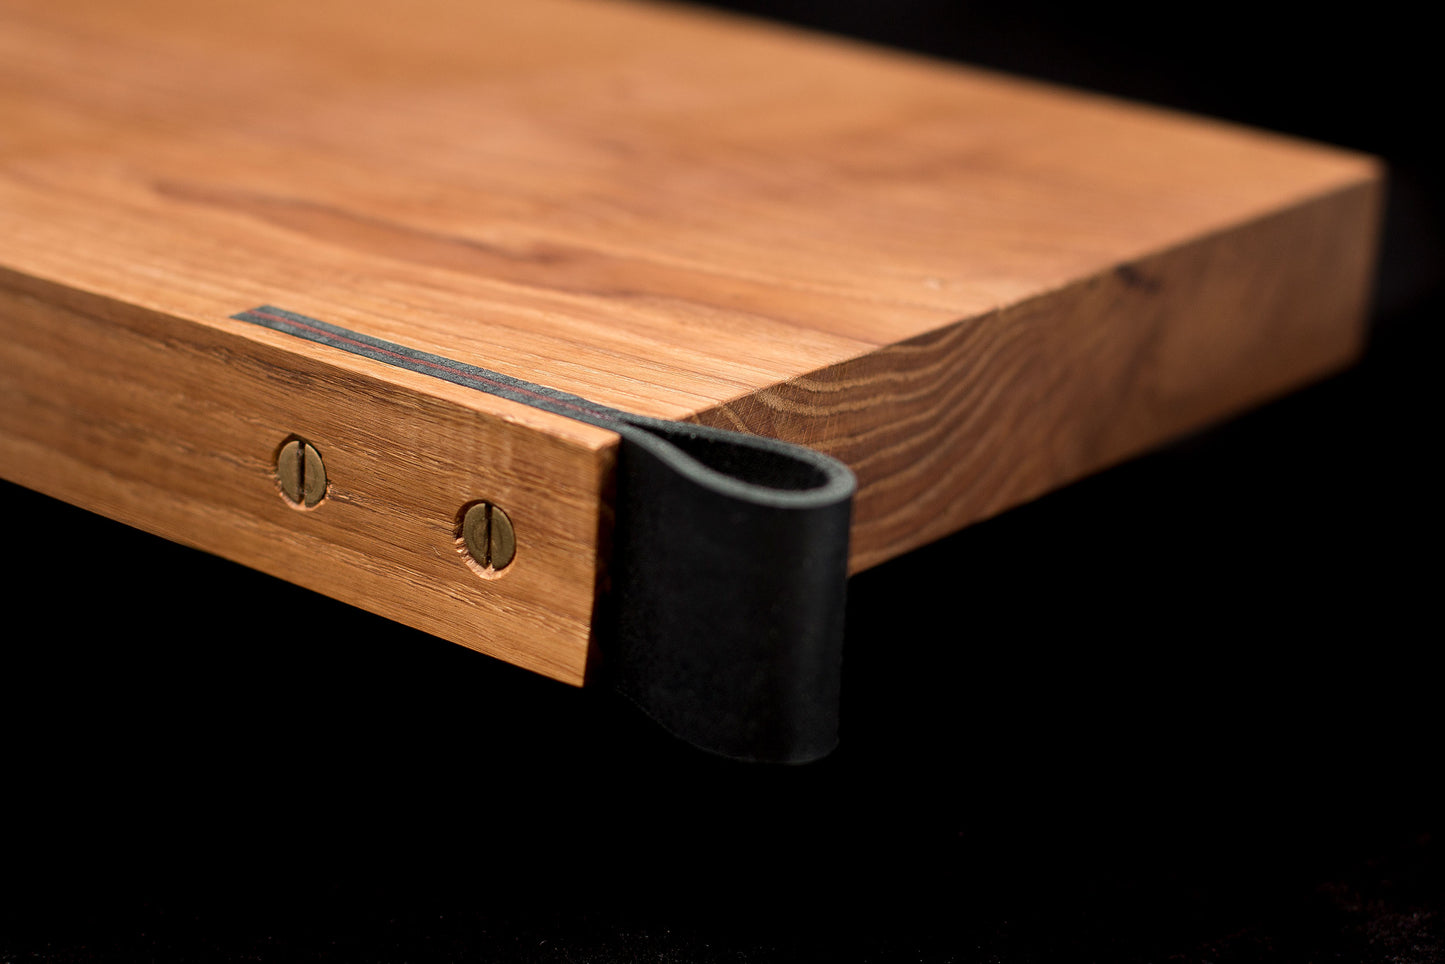 Oak board with leather handle inside